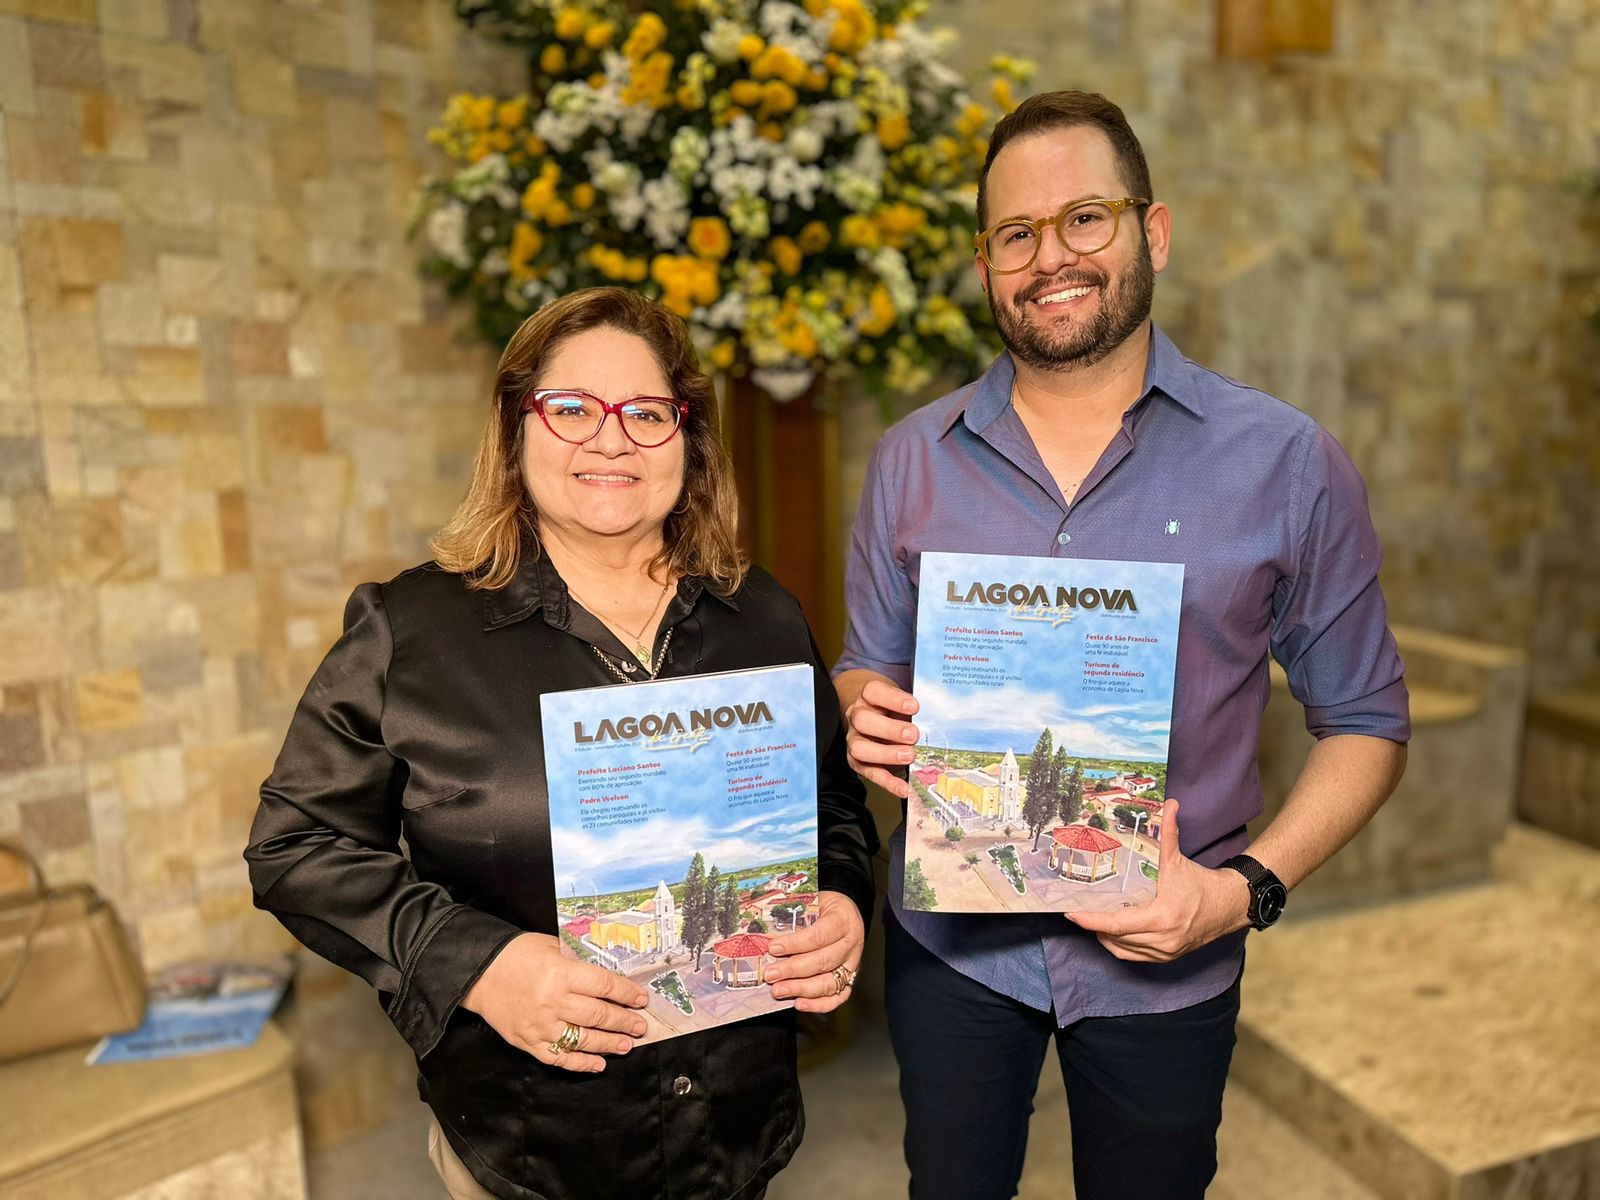 Jornalistas Ismael Medeiros e Suerda Medeiros lançam revista “Lagoa Nova da Gente”